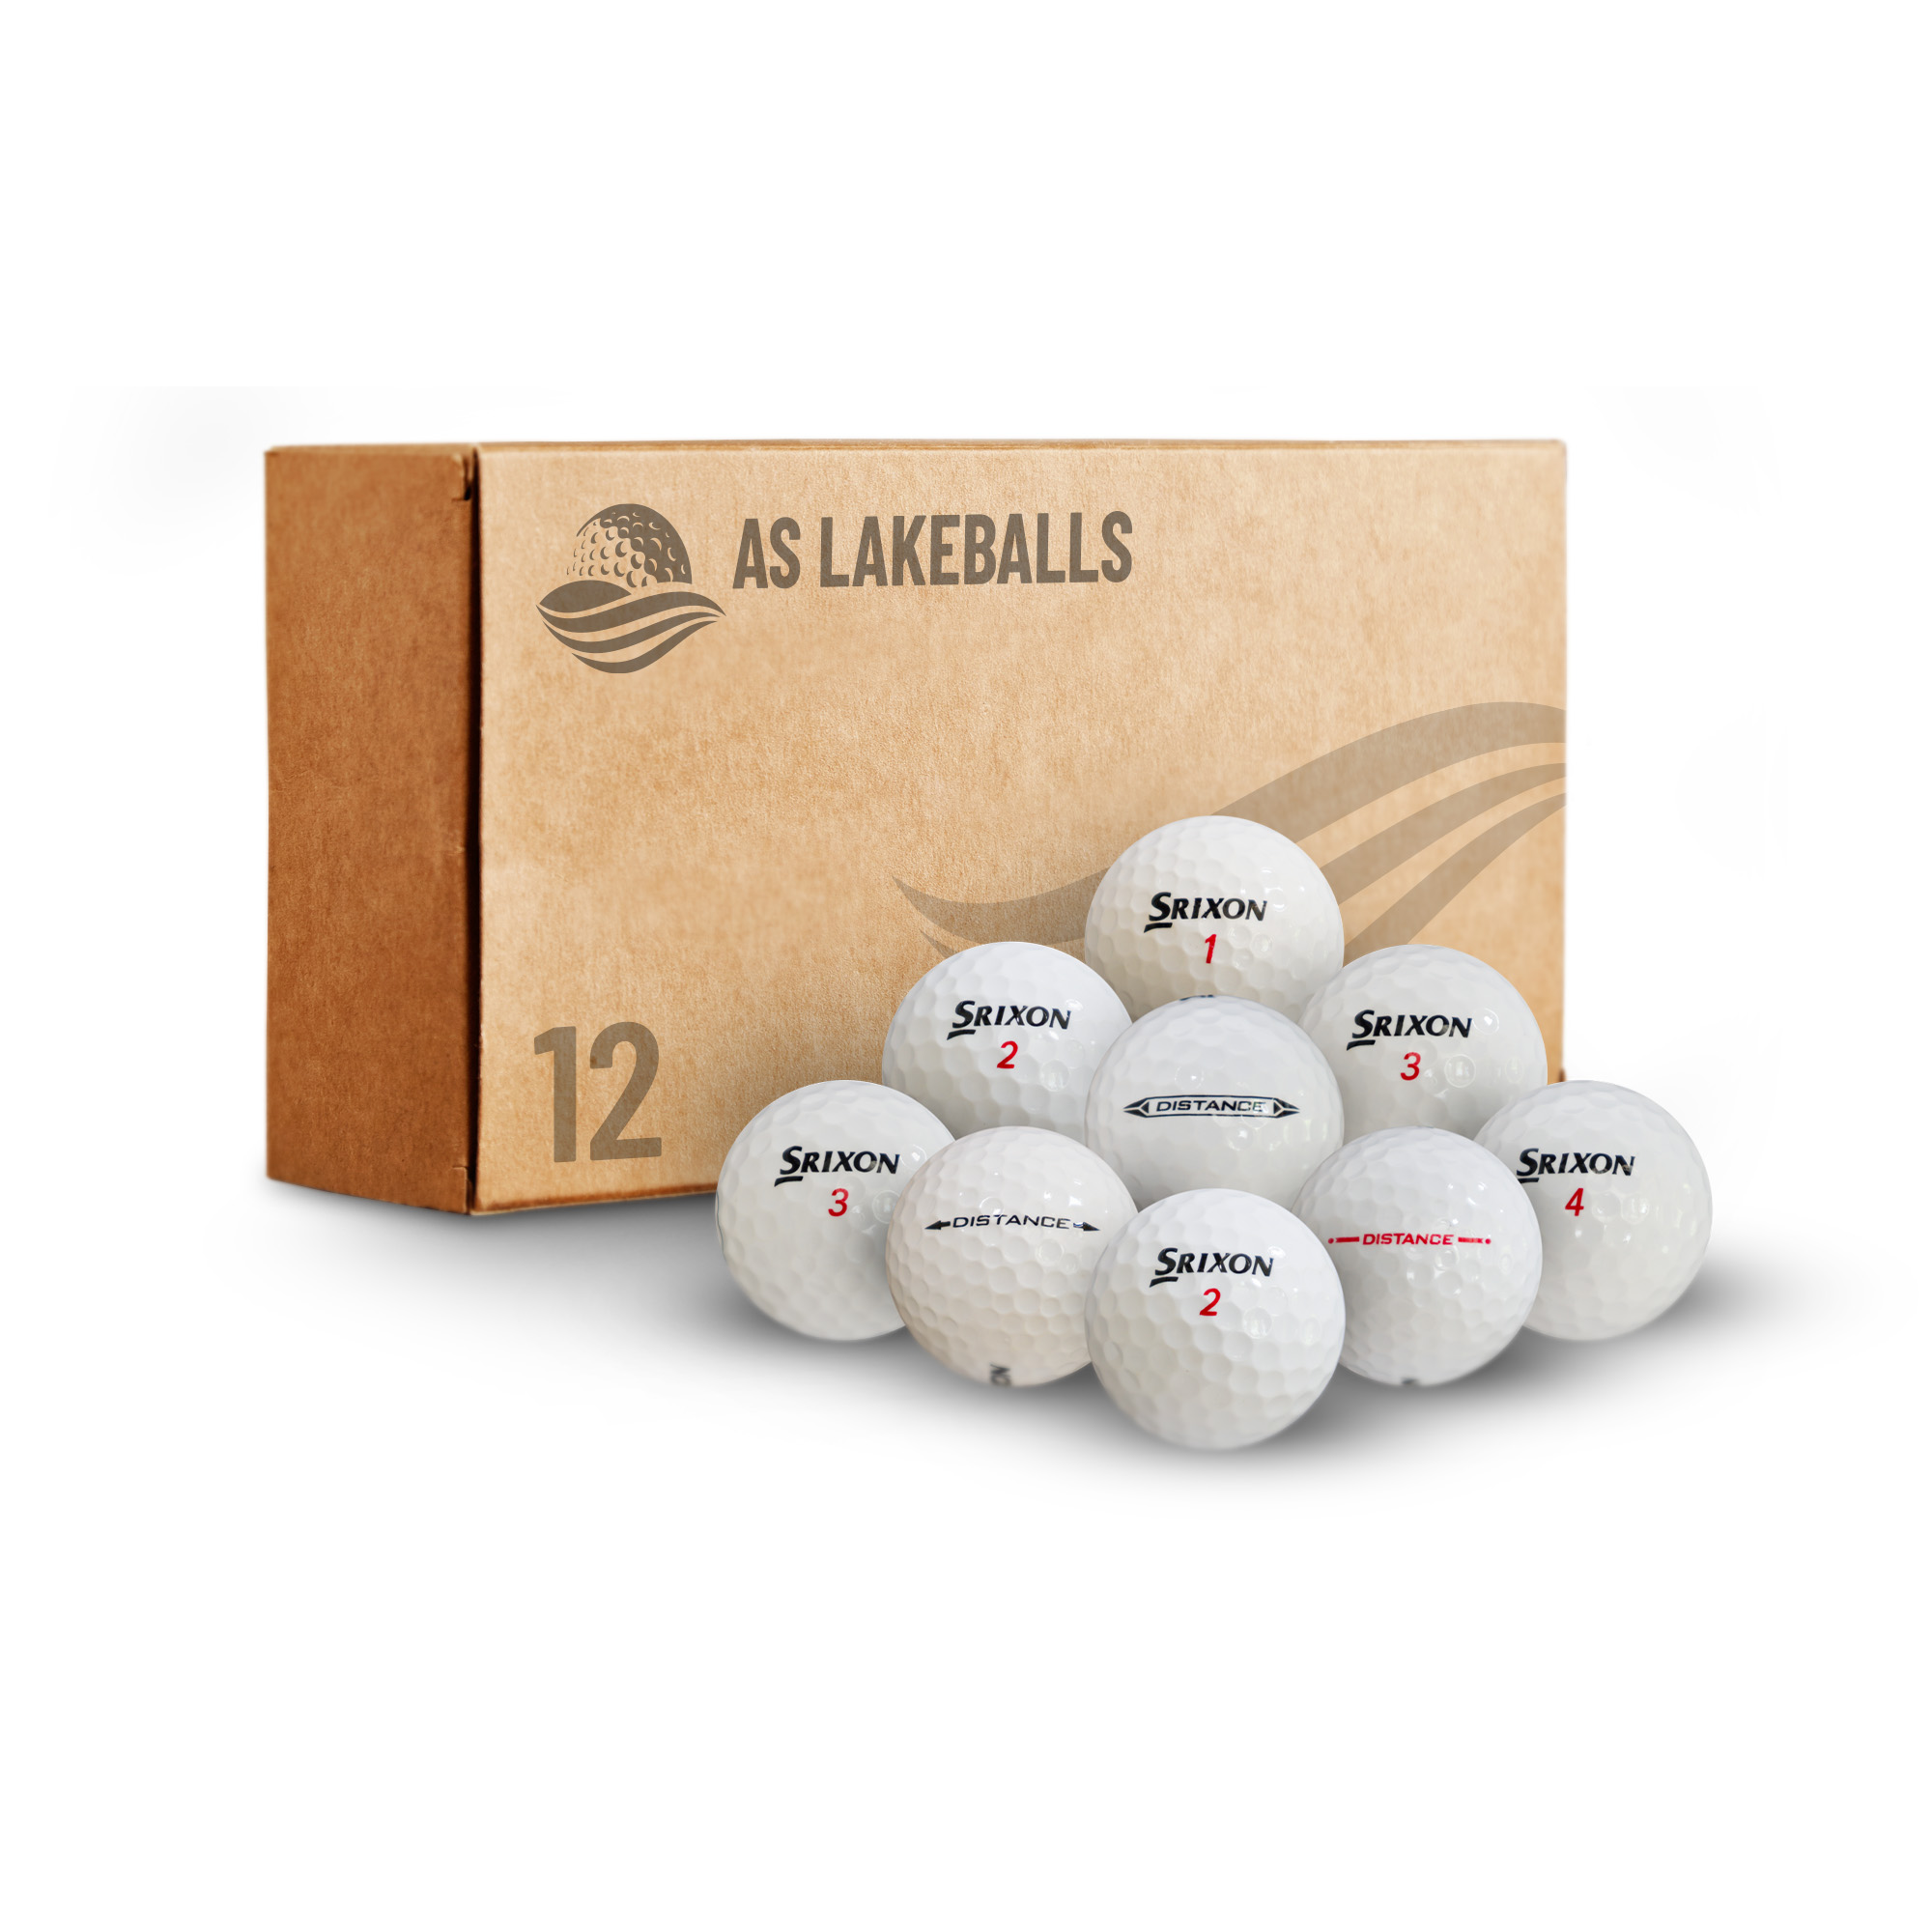 12 Stück Srixon Distance AA-AAA Lakeballs